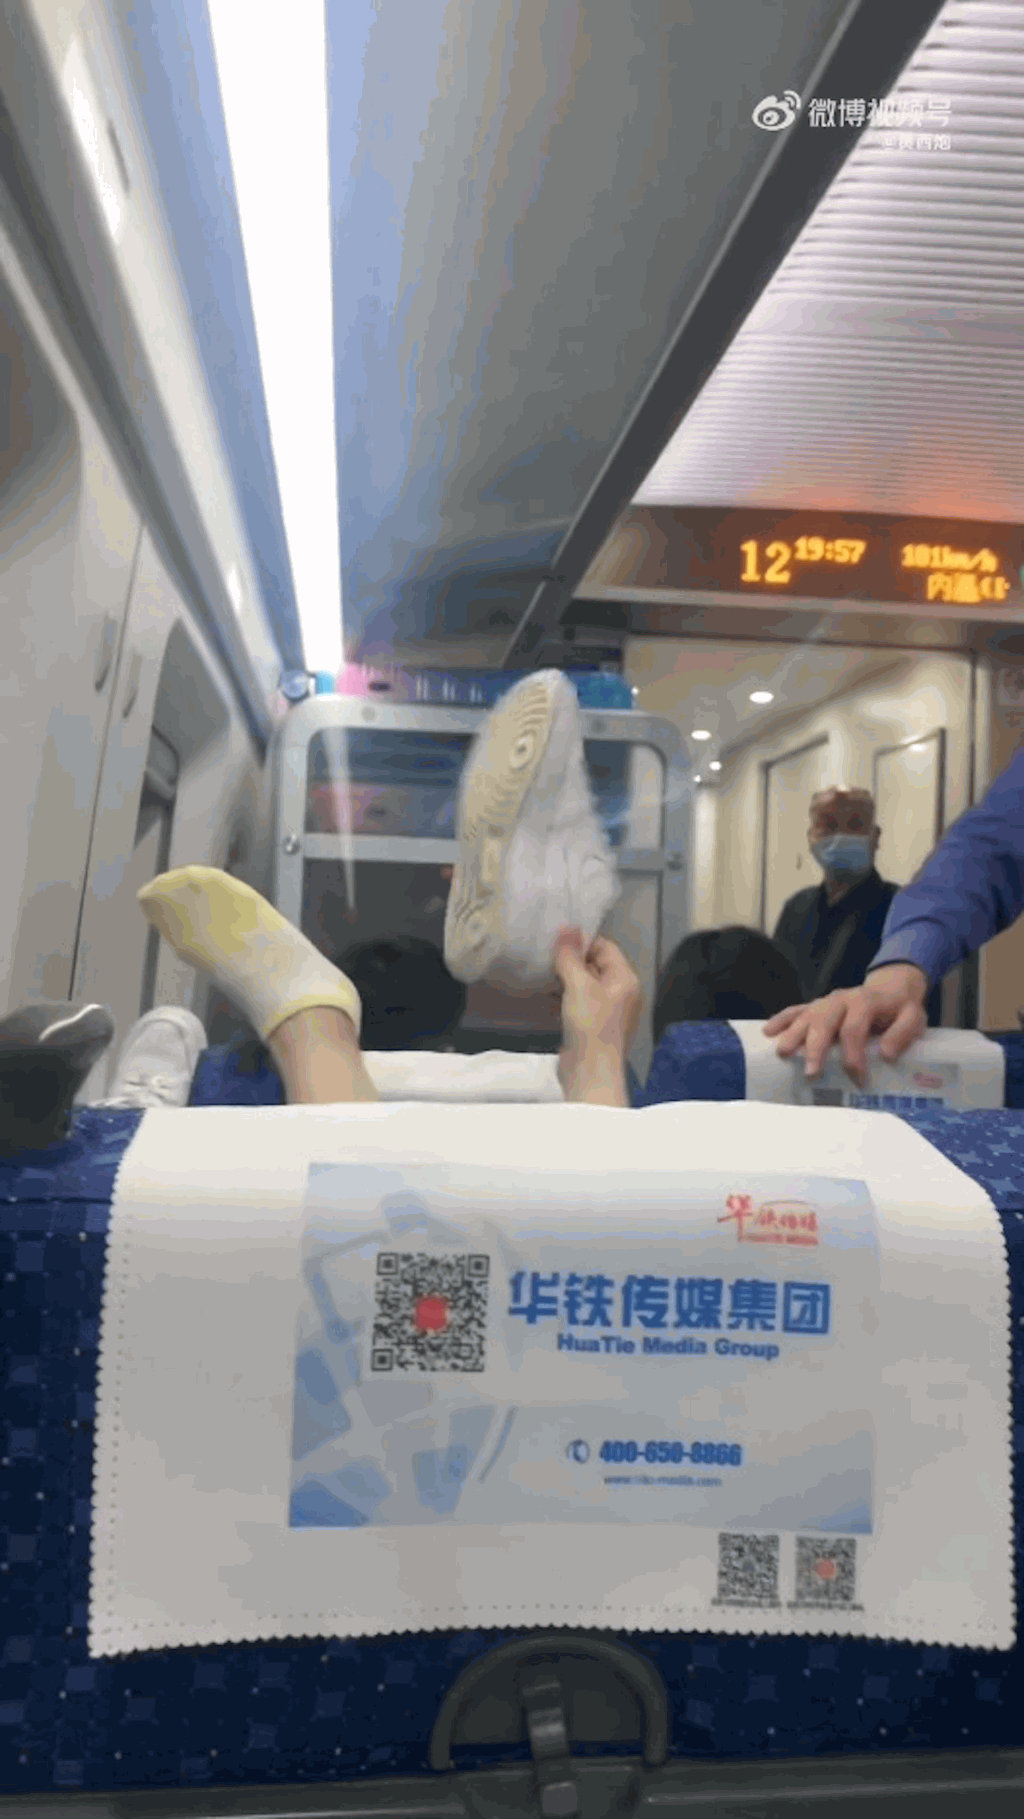 乘高铁把脚放前排乘客头上 女子辩称鞋底不脏